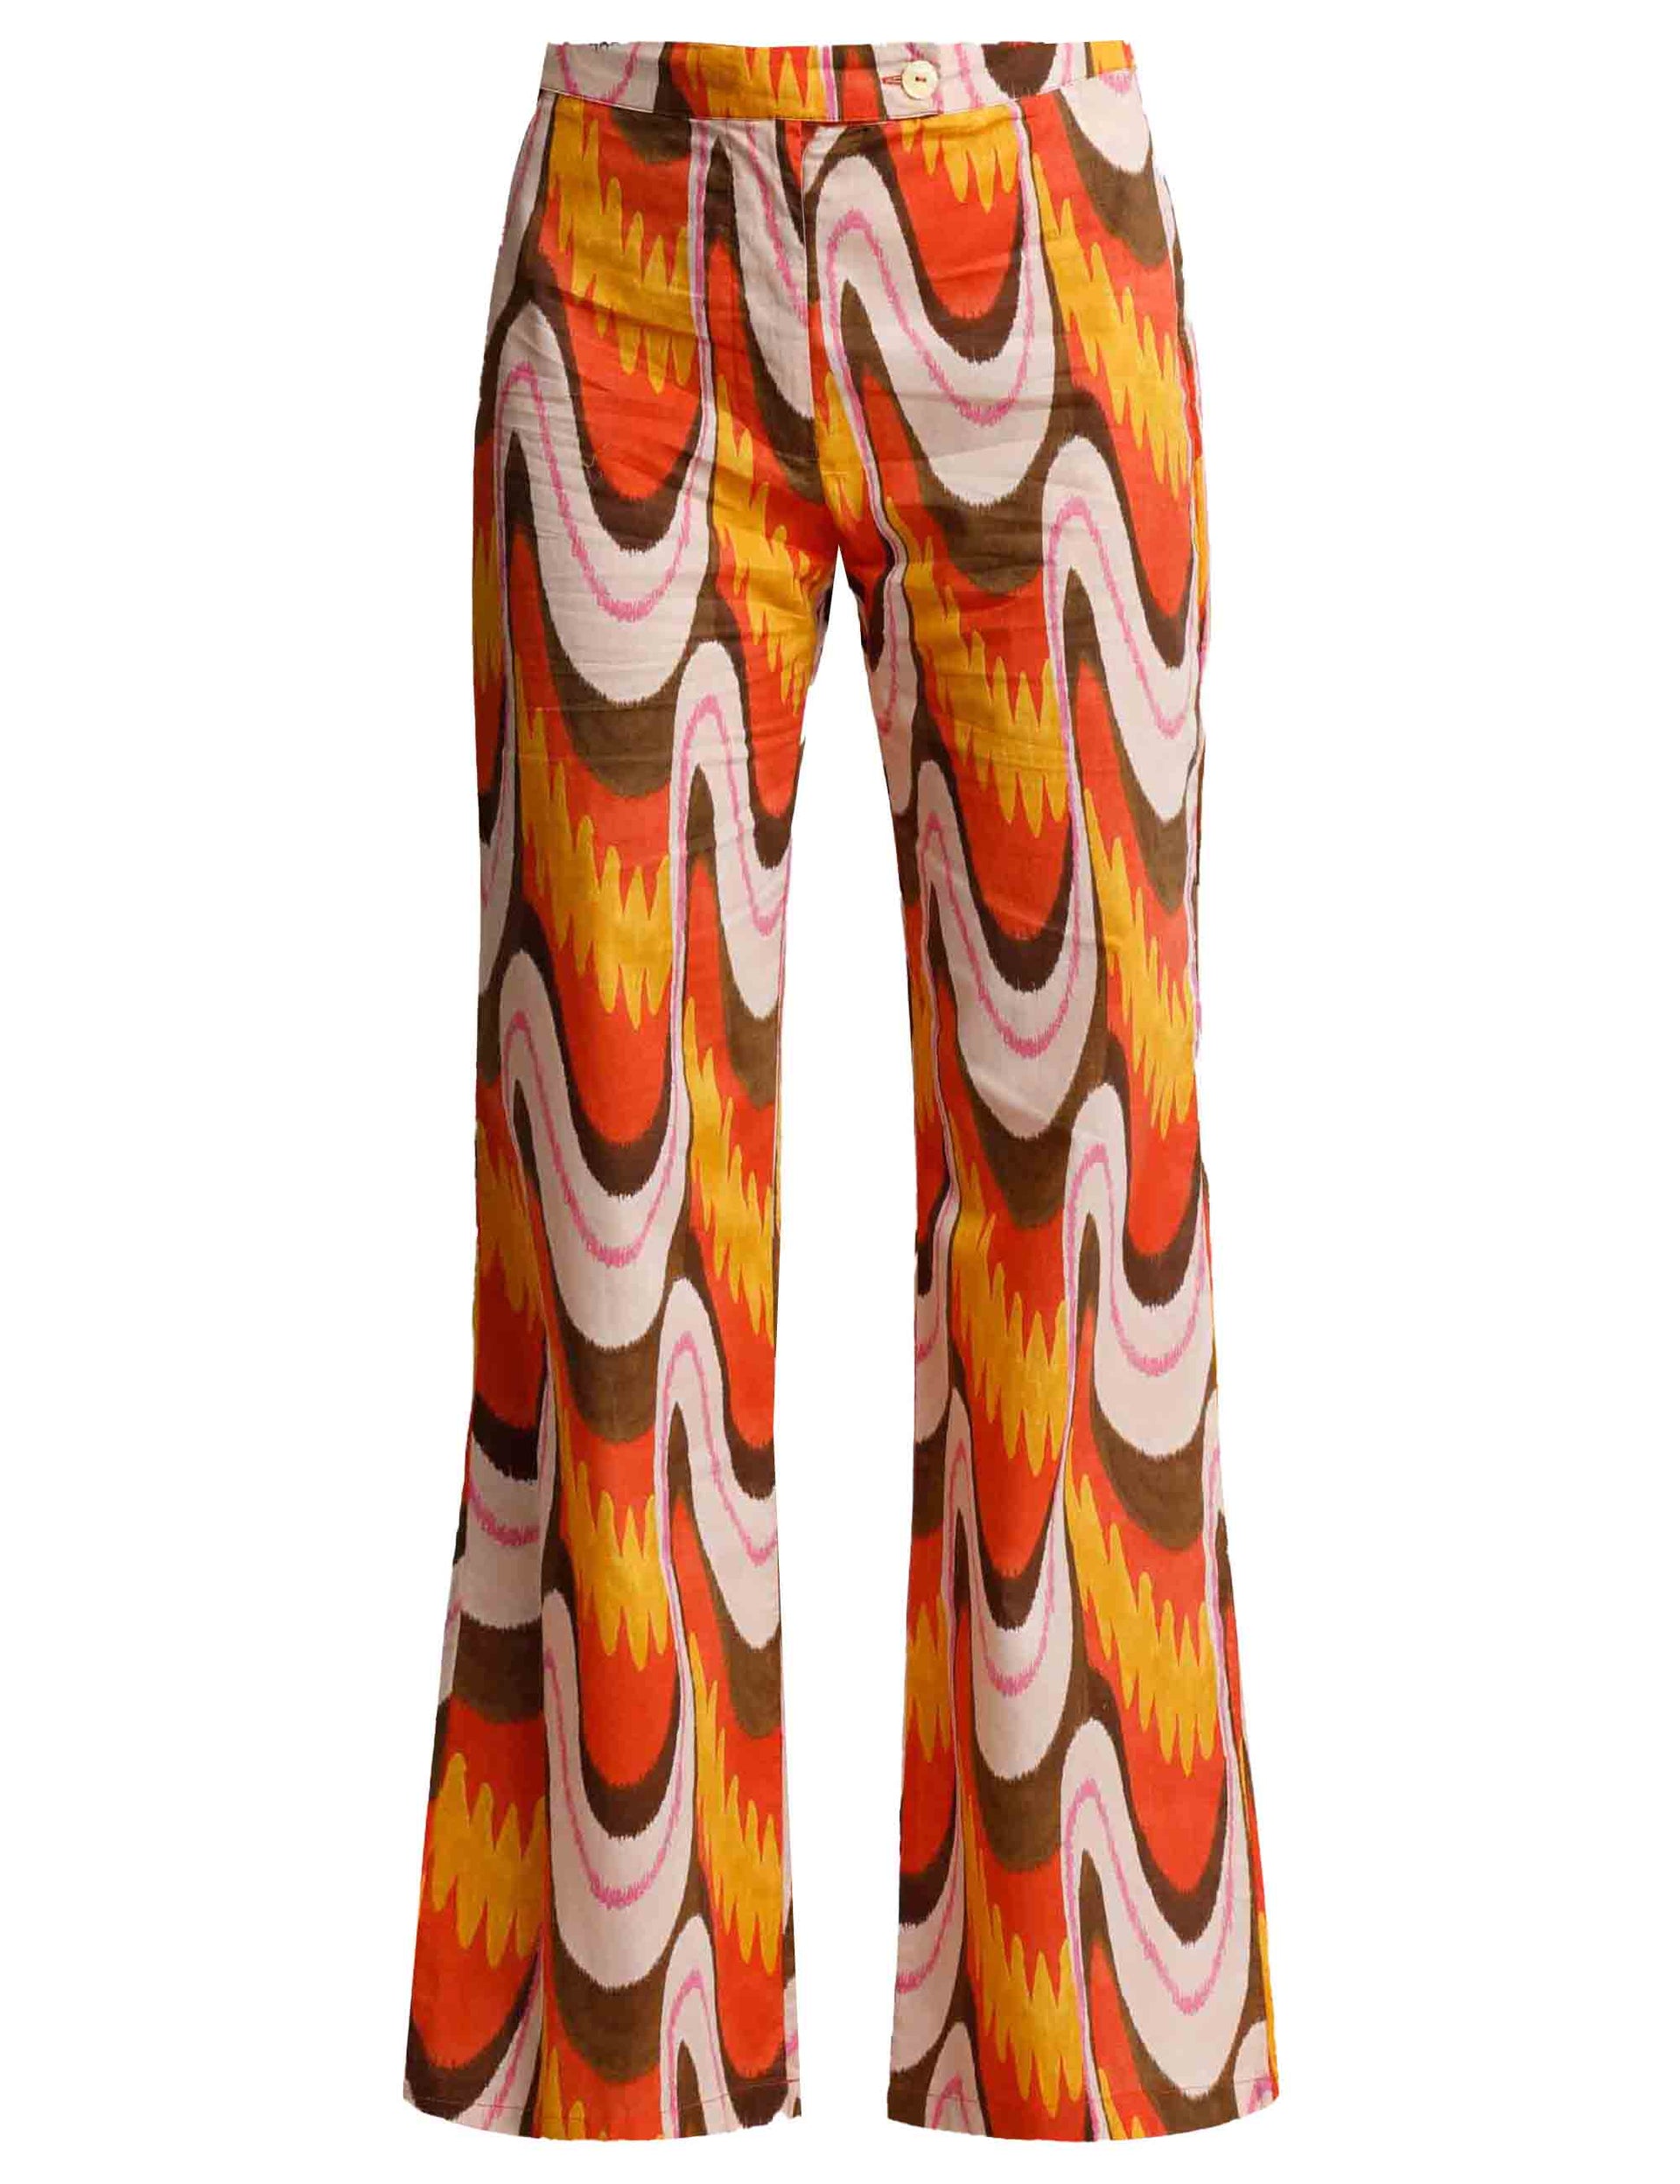 Ikat Wave Muslin women's trousers in orange patterned cotton